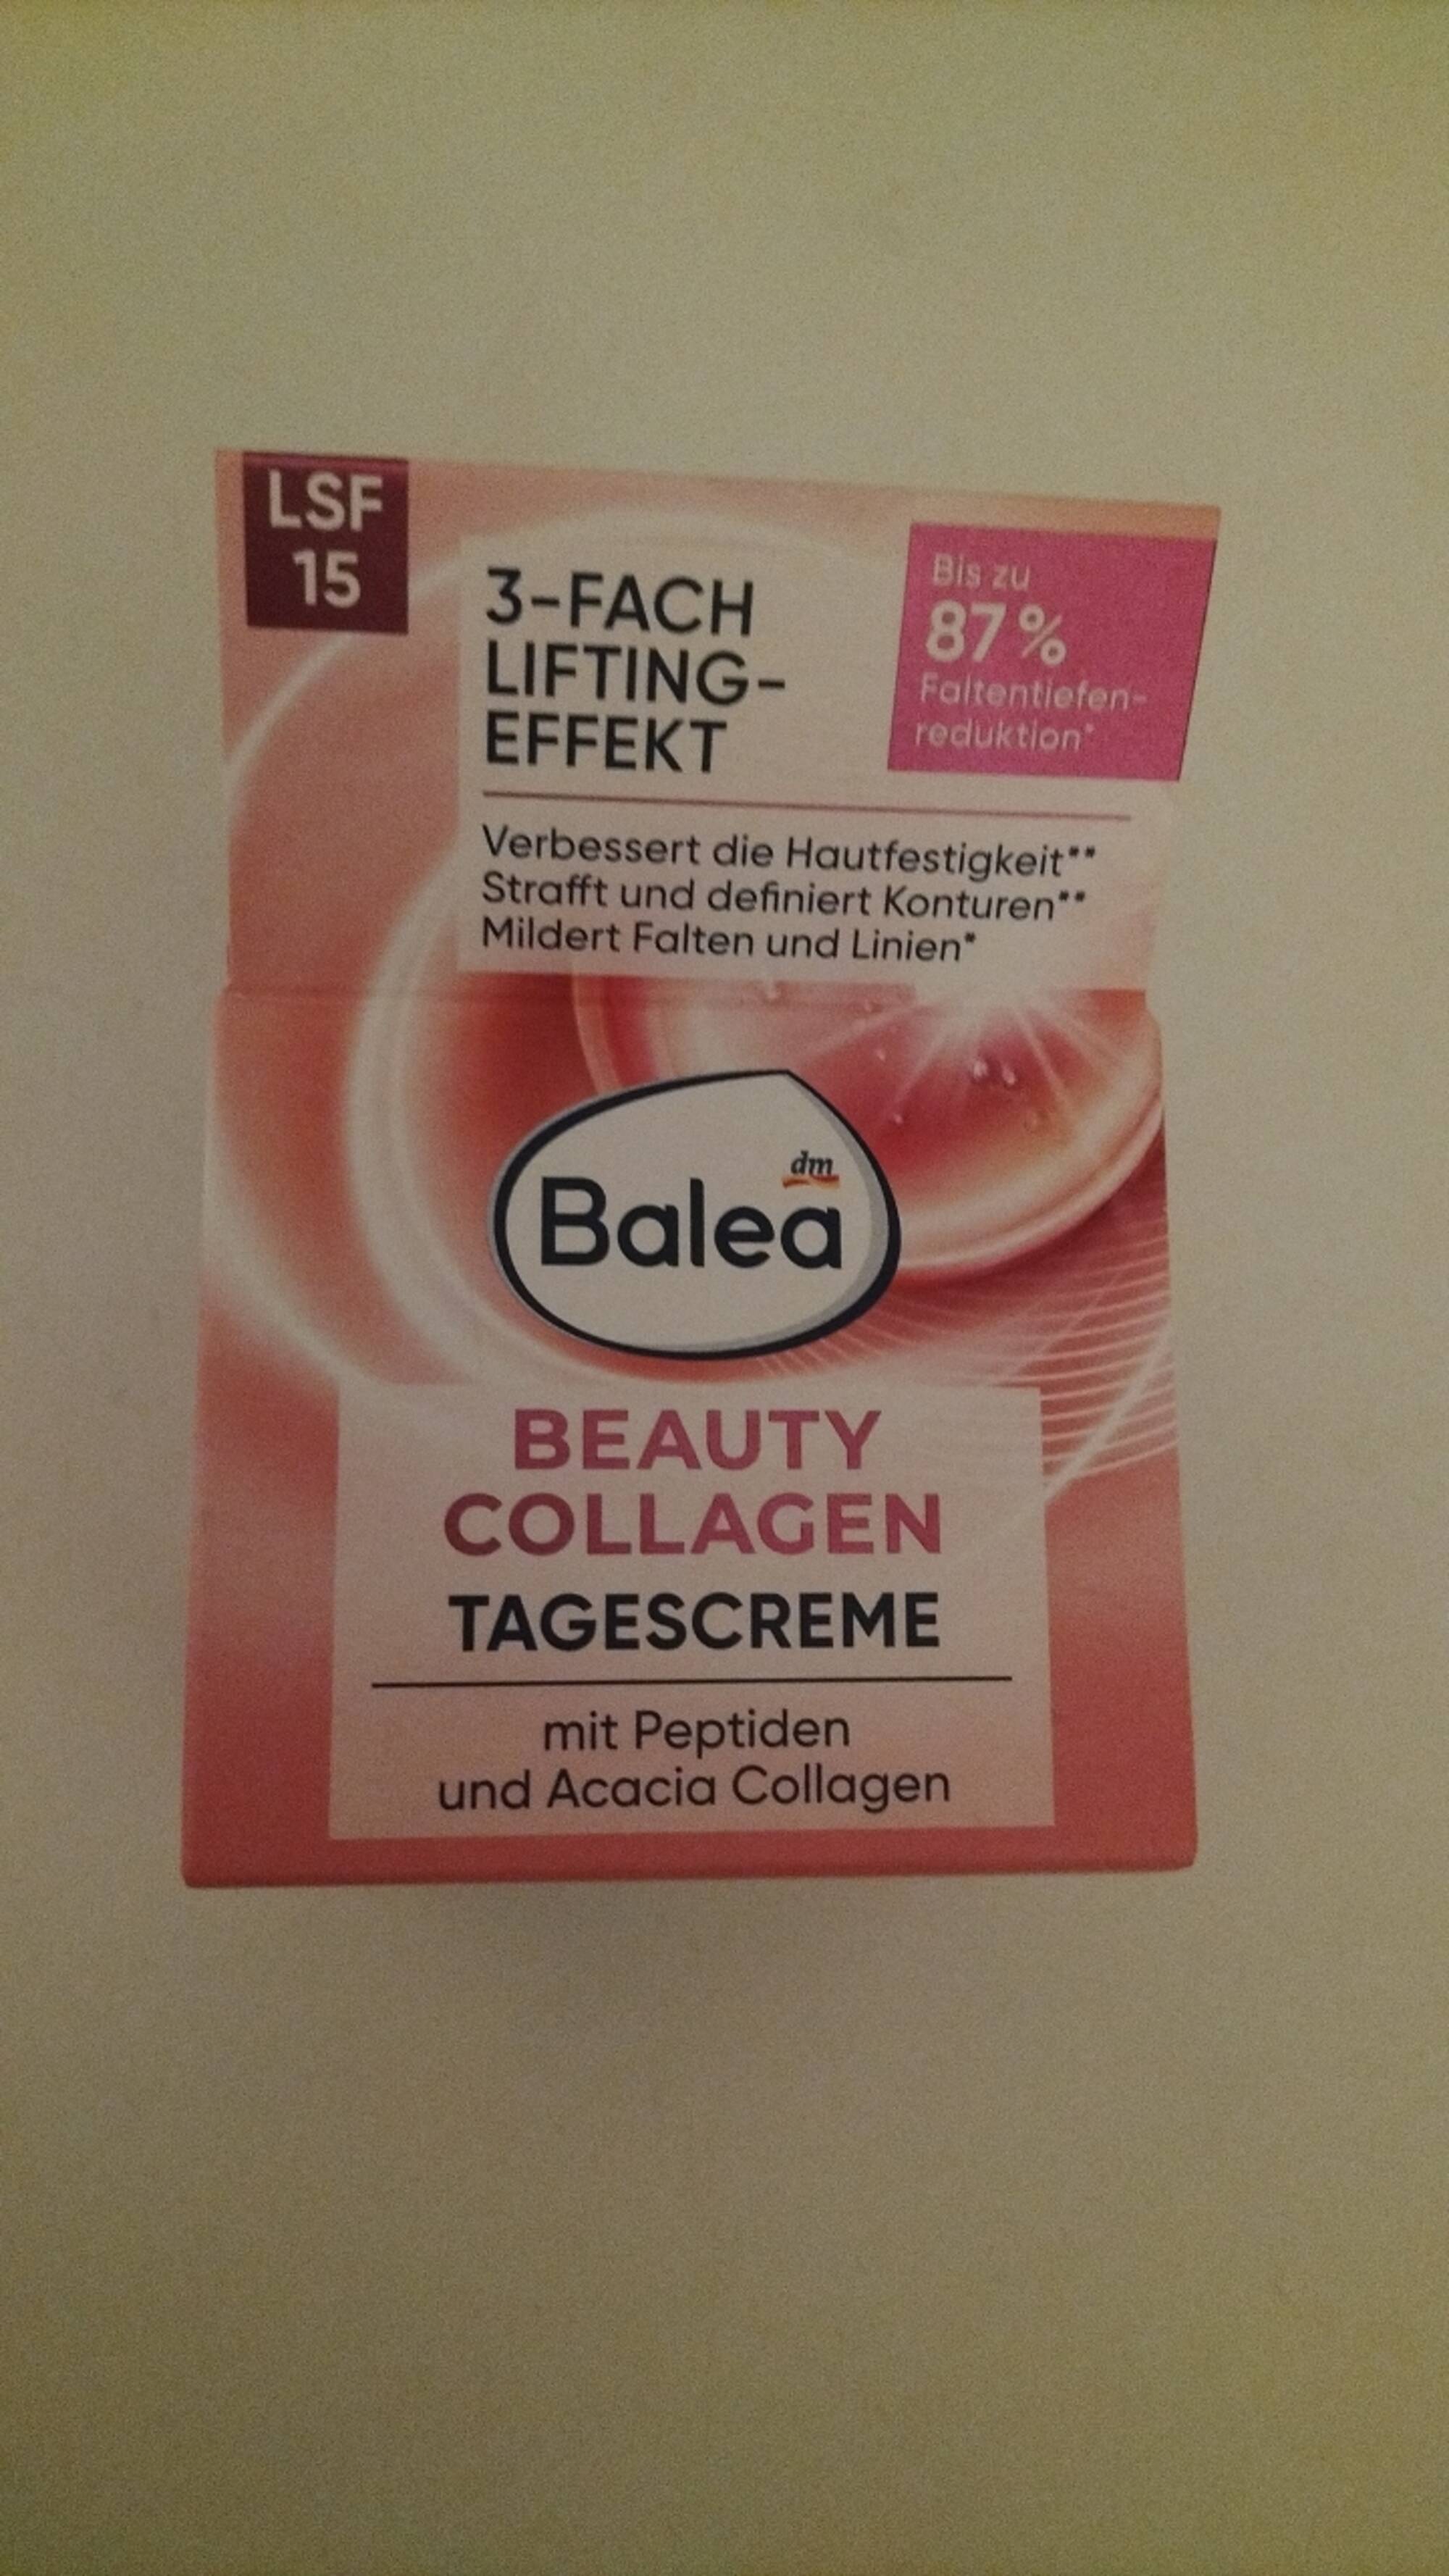 BALEA - Beauty collagen - Tagescreme  LSF 15